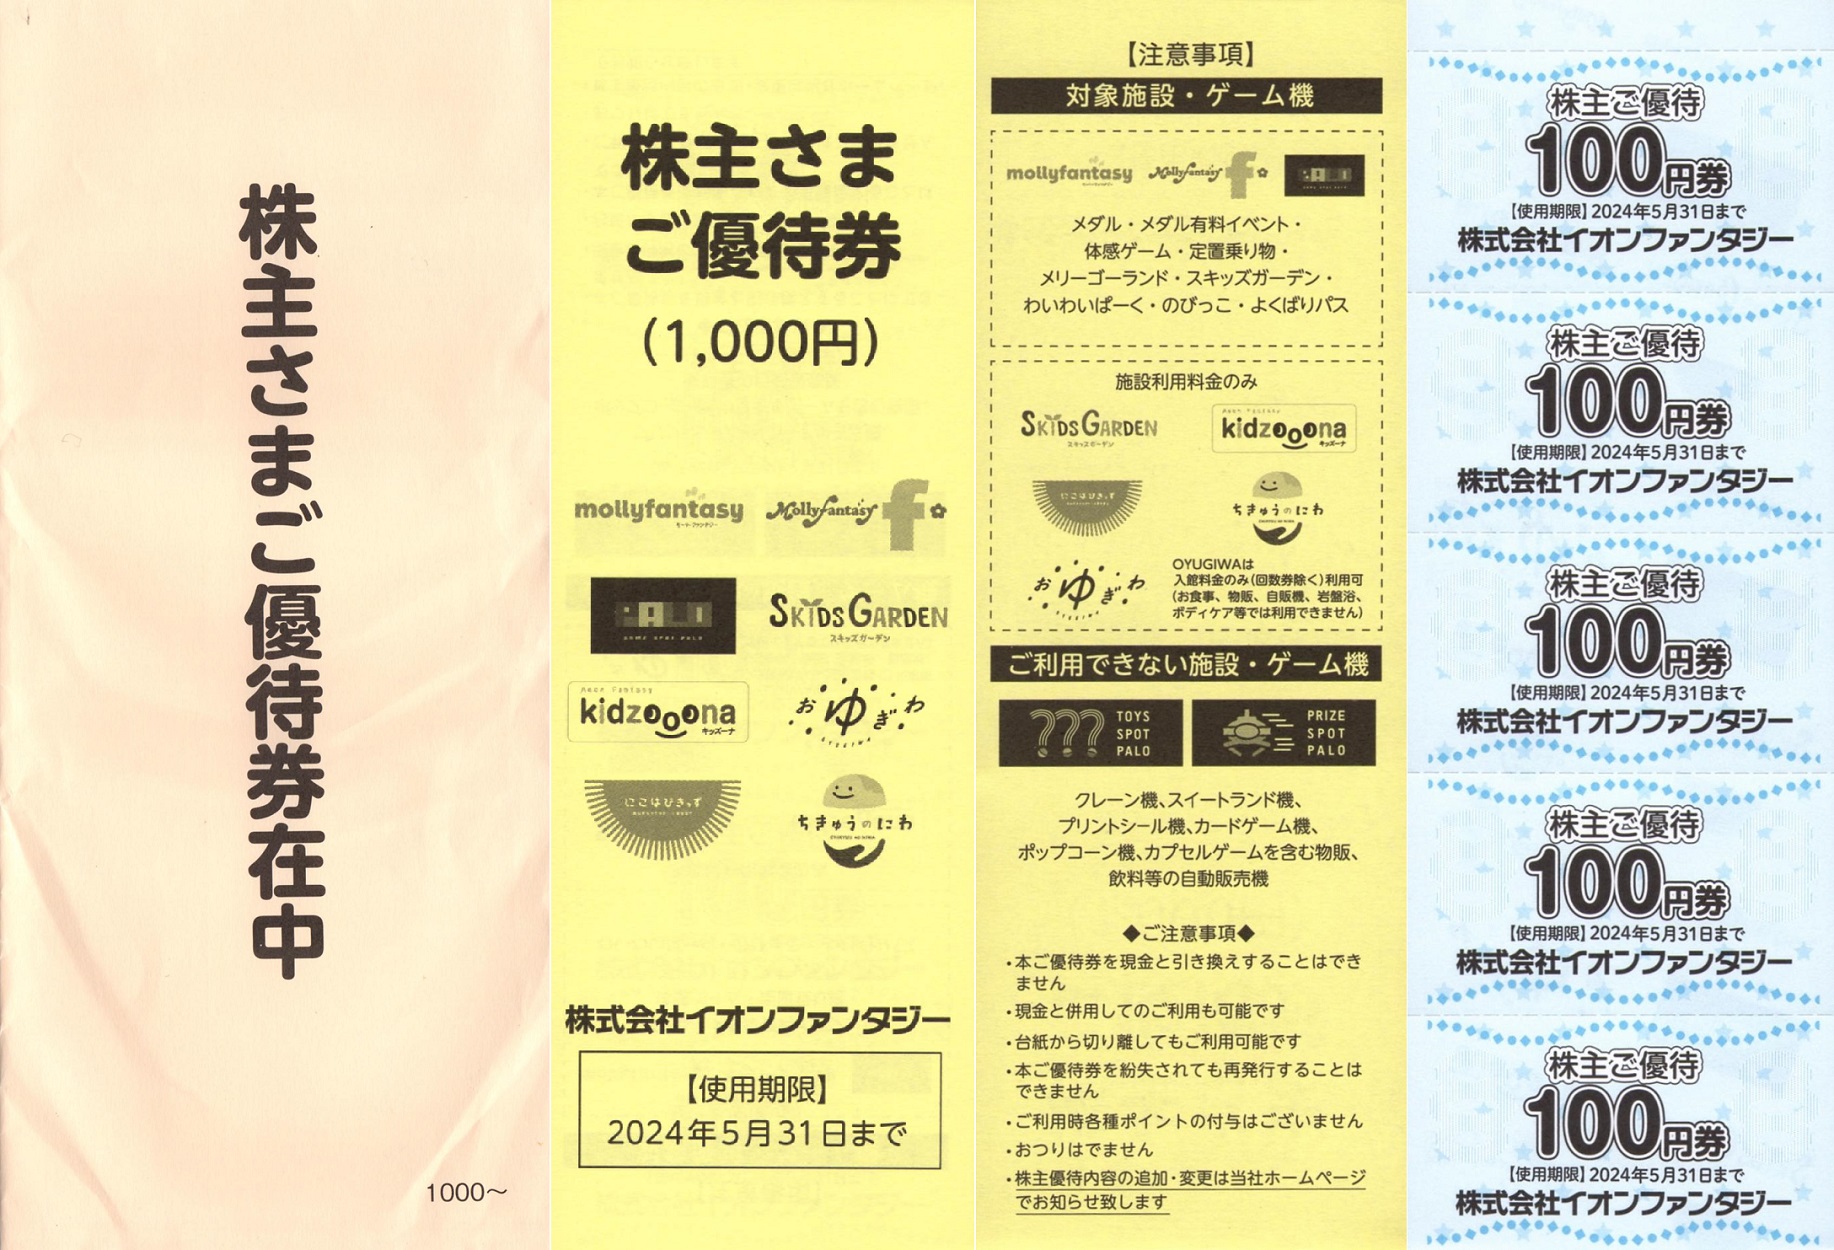 イオンファンタジー株主優待10000円分(100円券×100枚)23.5.31迄チケット